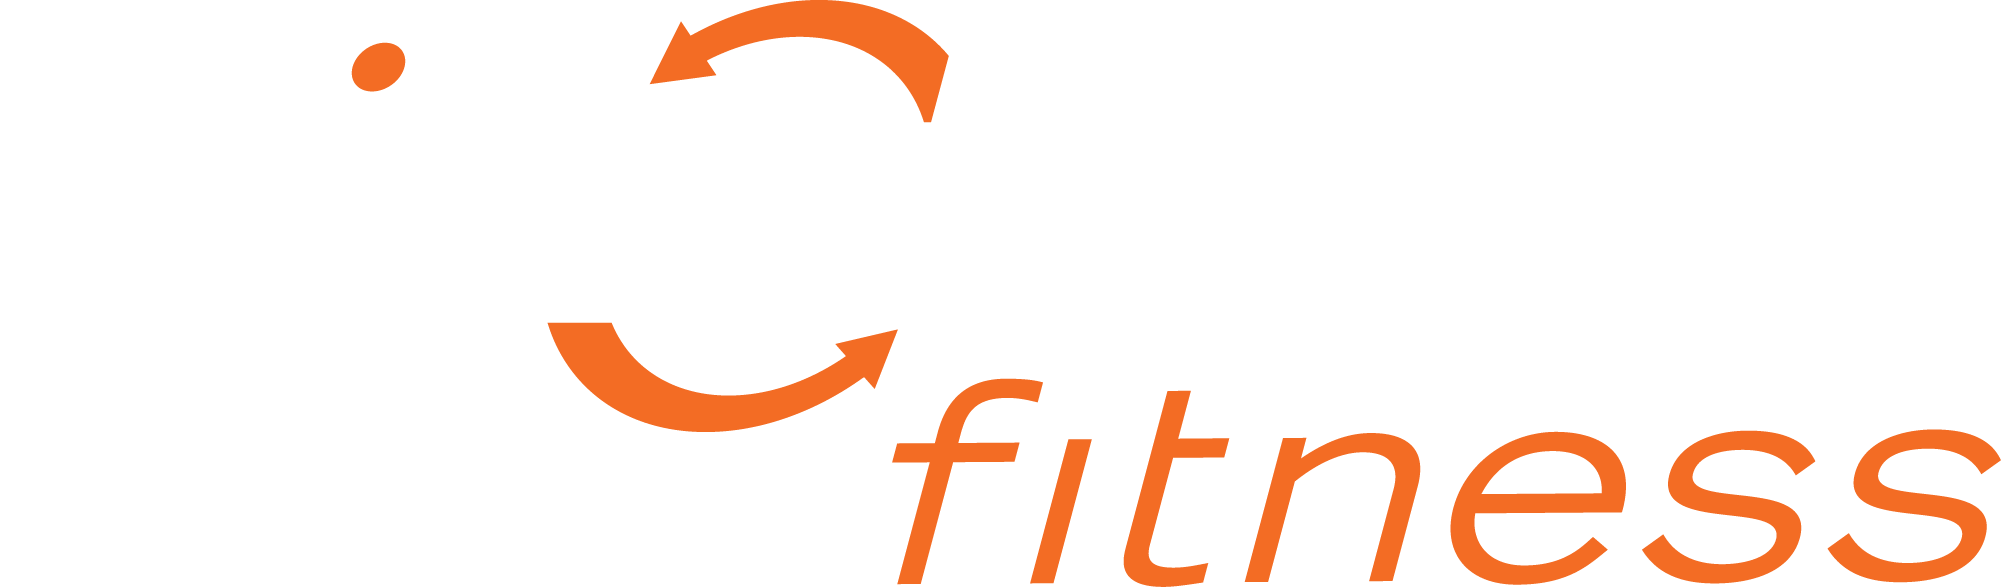 Pivotal Logo - pivotal-logo | Pivotal Fitness